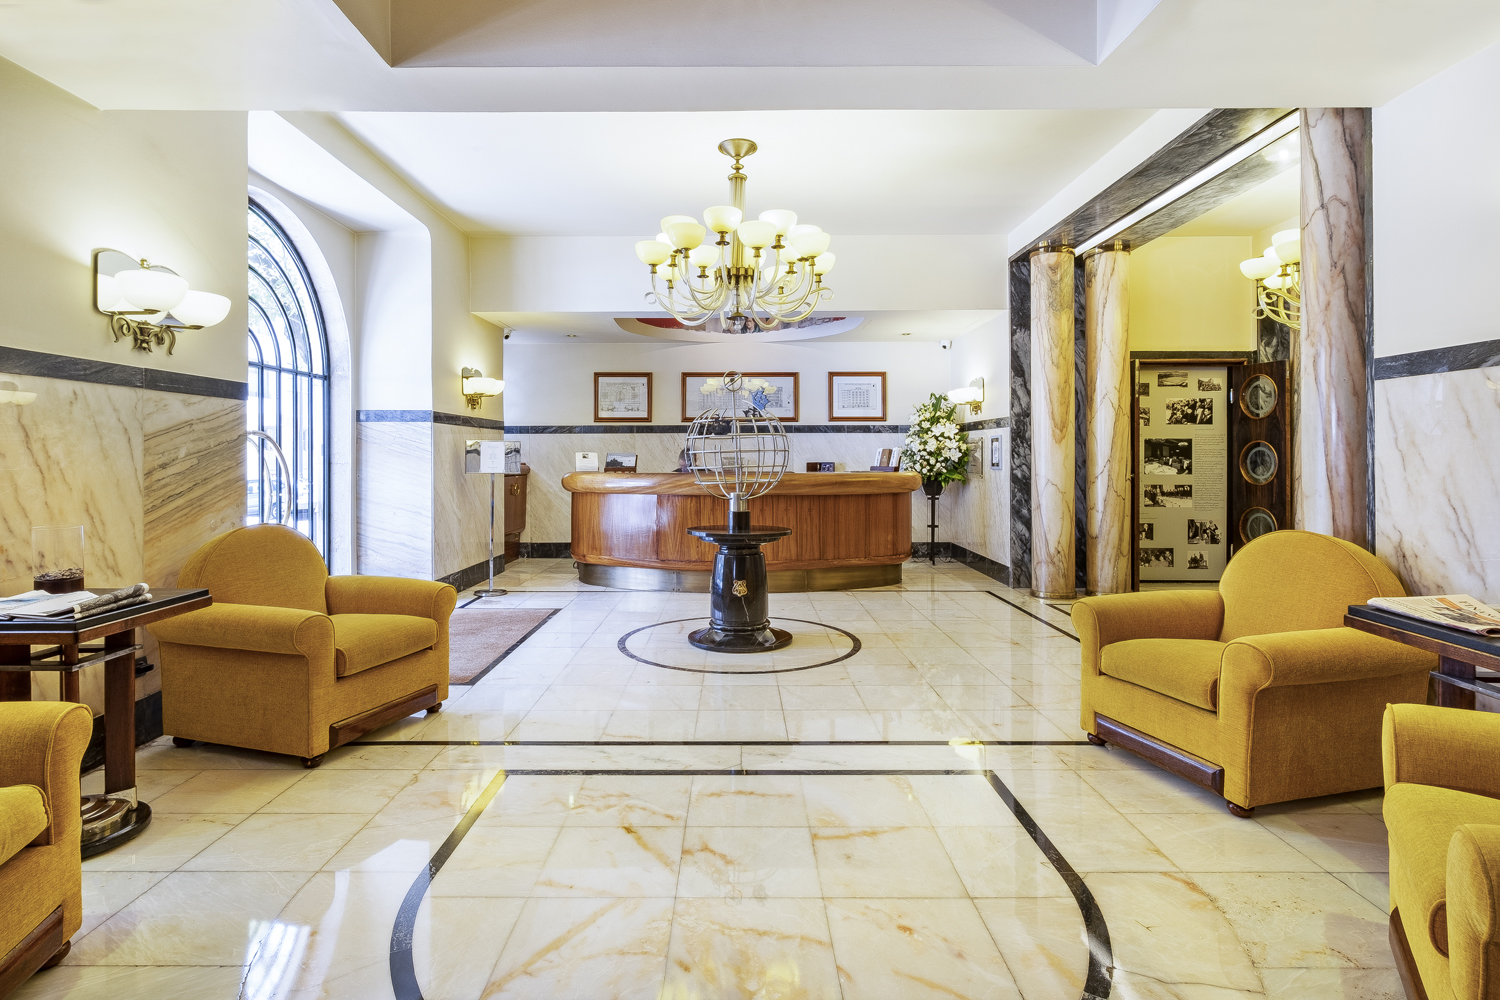 Hotel Britania eleito pelo Telegraph como um dos mais surpreendentes hotéis Art Deco do mundo